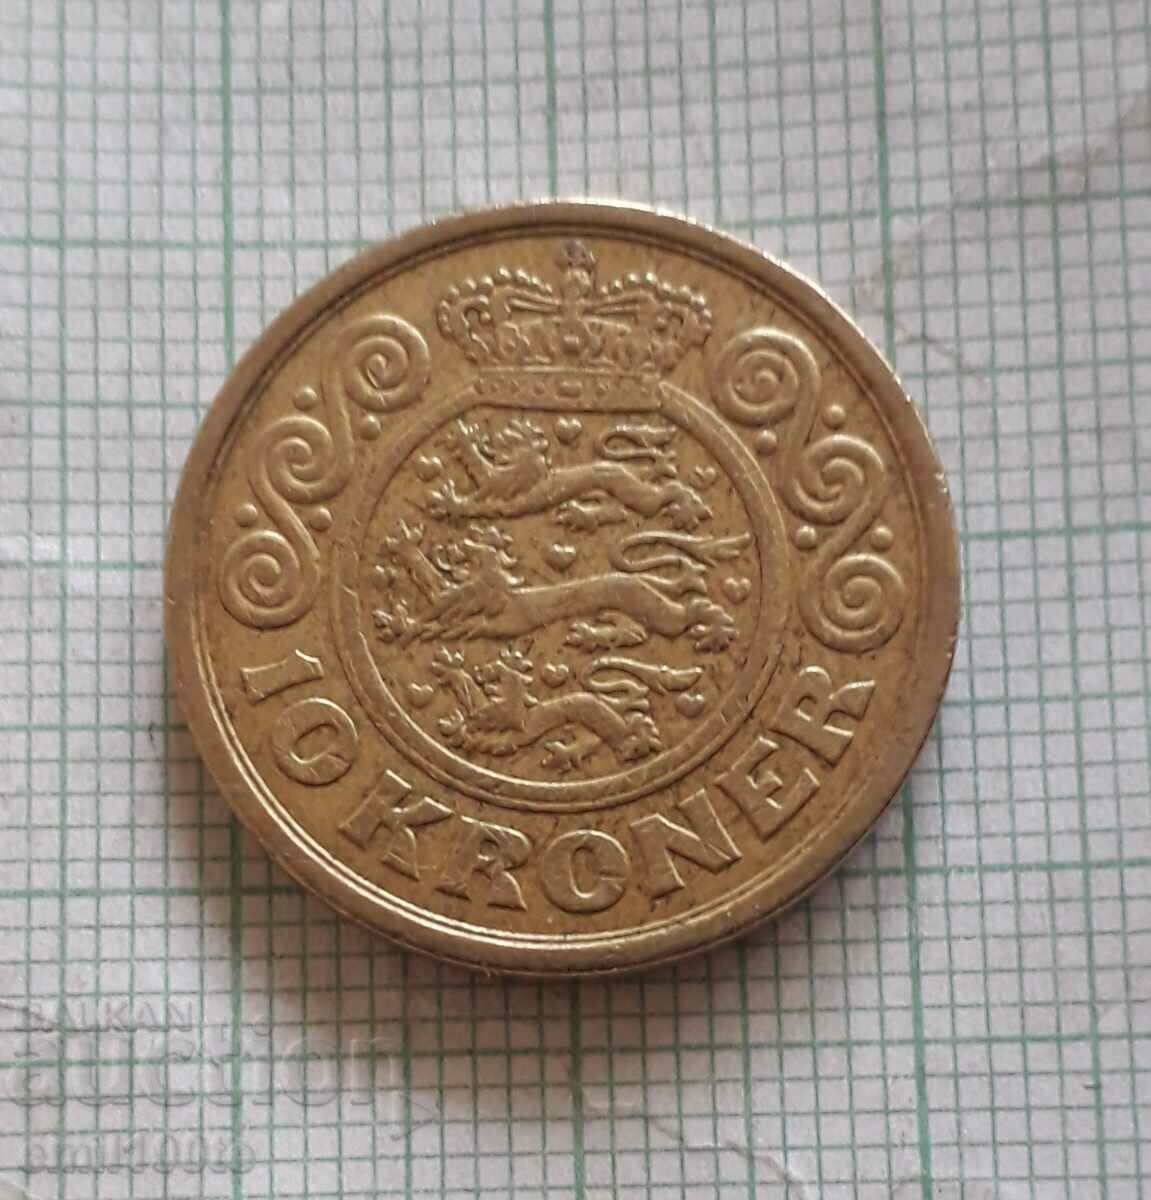 10 крони 2002 г. Дания